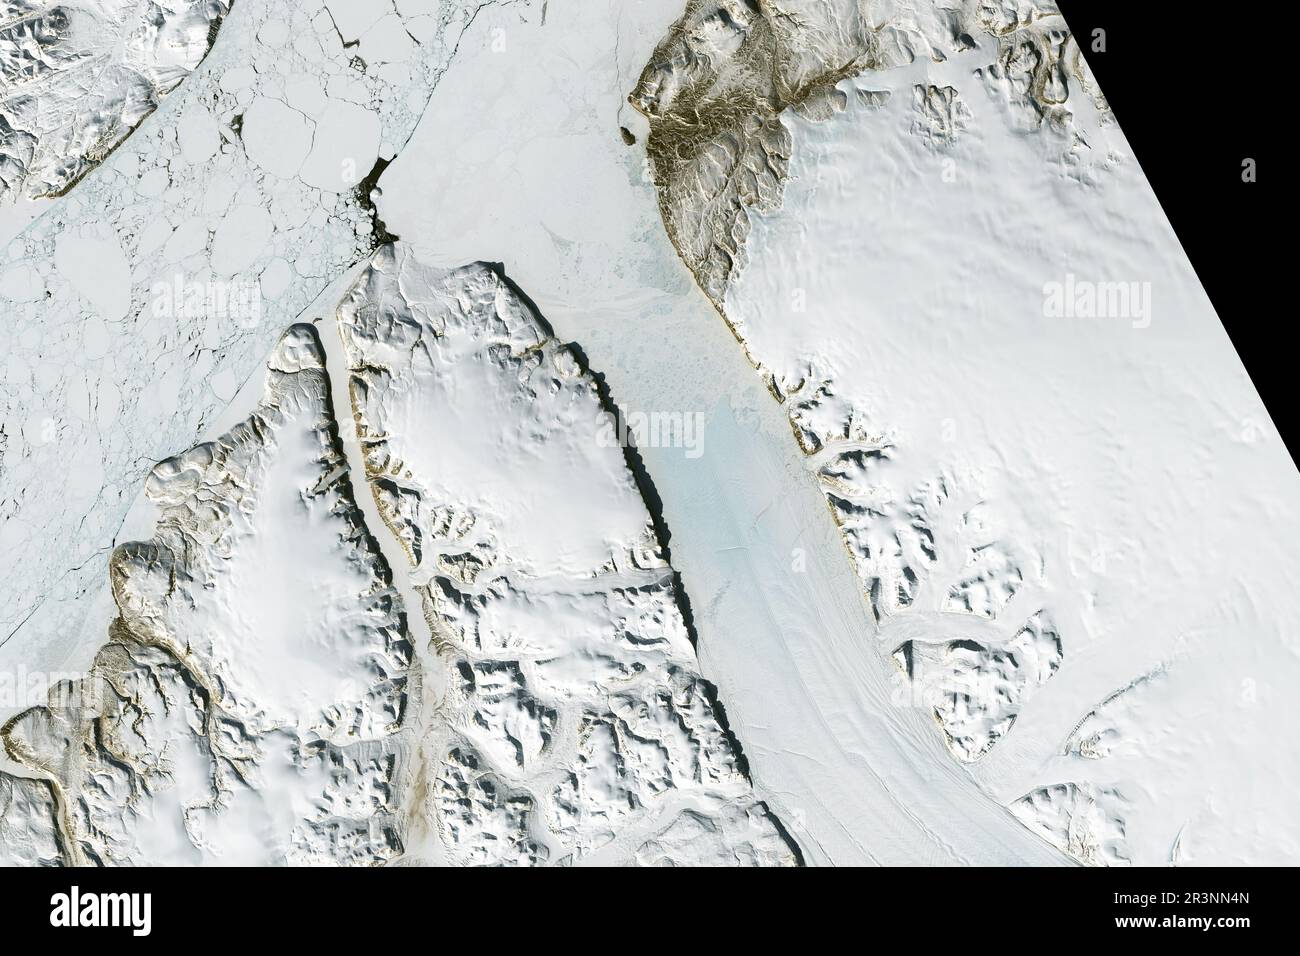 14 maggio 2023, Groenlandia, nel 2017, si formò una frattura vicino ad un canale di ruscello che si snoda lungo la superficie del ghiacciaio. Da allora, la 'nuova' spaccatura è convergente con una spaccatura più vecchia. Le fratture fuse sono visibili in questa immagine dettagliata della lingua di ghiaccio galleggiante, acquisita il 14 maggio 2023, con l'Operational Land Imager (oli) su Landsat 8. Resta da vedere se la frattura alla fine crescerà attraverso la larghezza del ghiacciaio e rilascerà un altro grande iceberg. Il ghiacciaio Petermann è uno dei più grandi ghiacciai marini della Groenlandia. Come la maggior parte dei ghiacciai che scaricano ghiaccio nell'oceano, Petermann Foto Stock